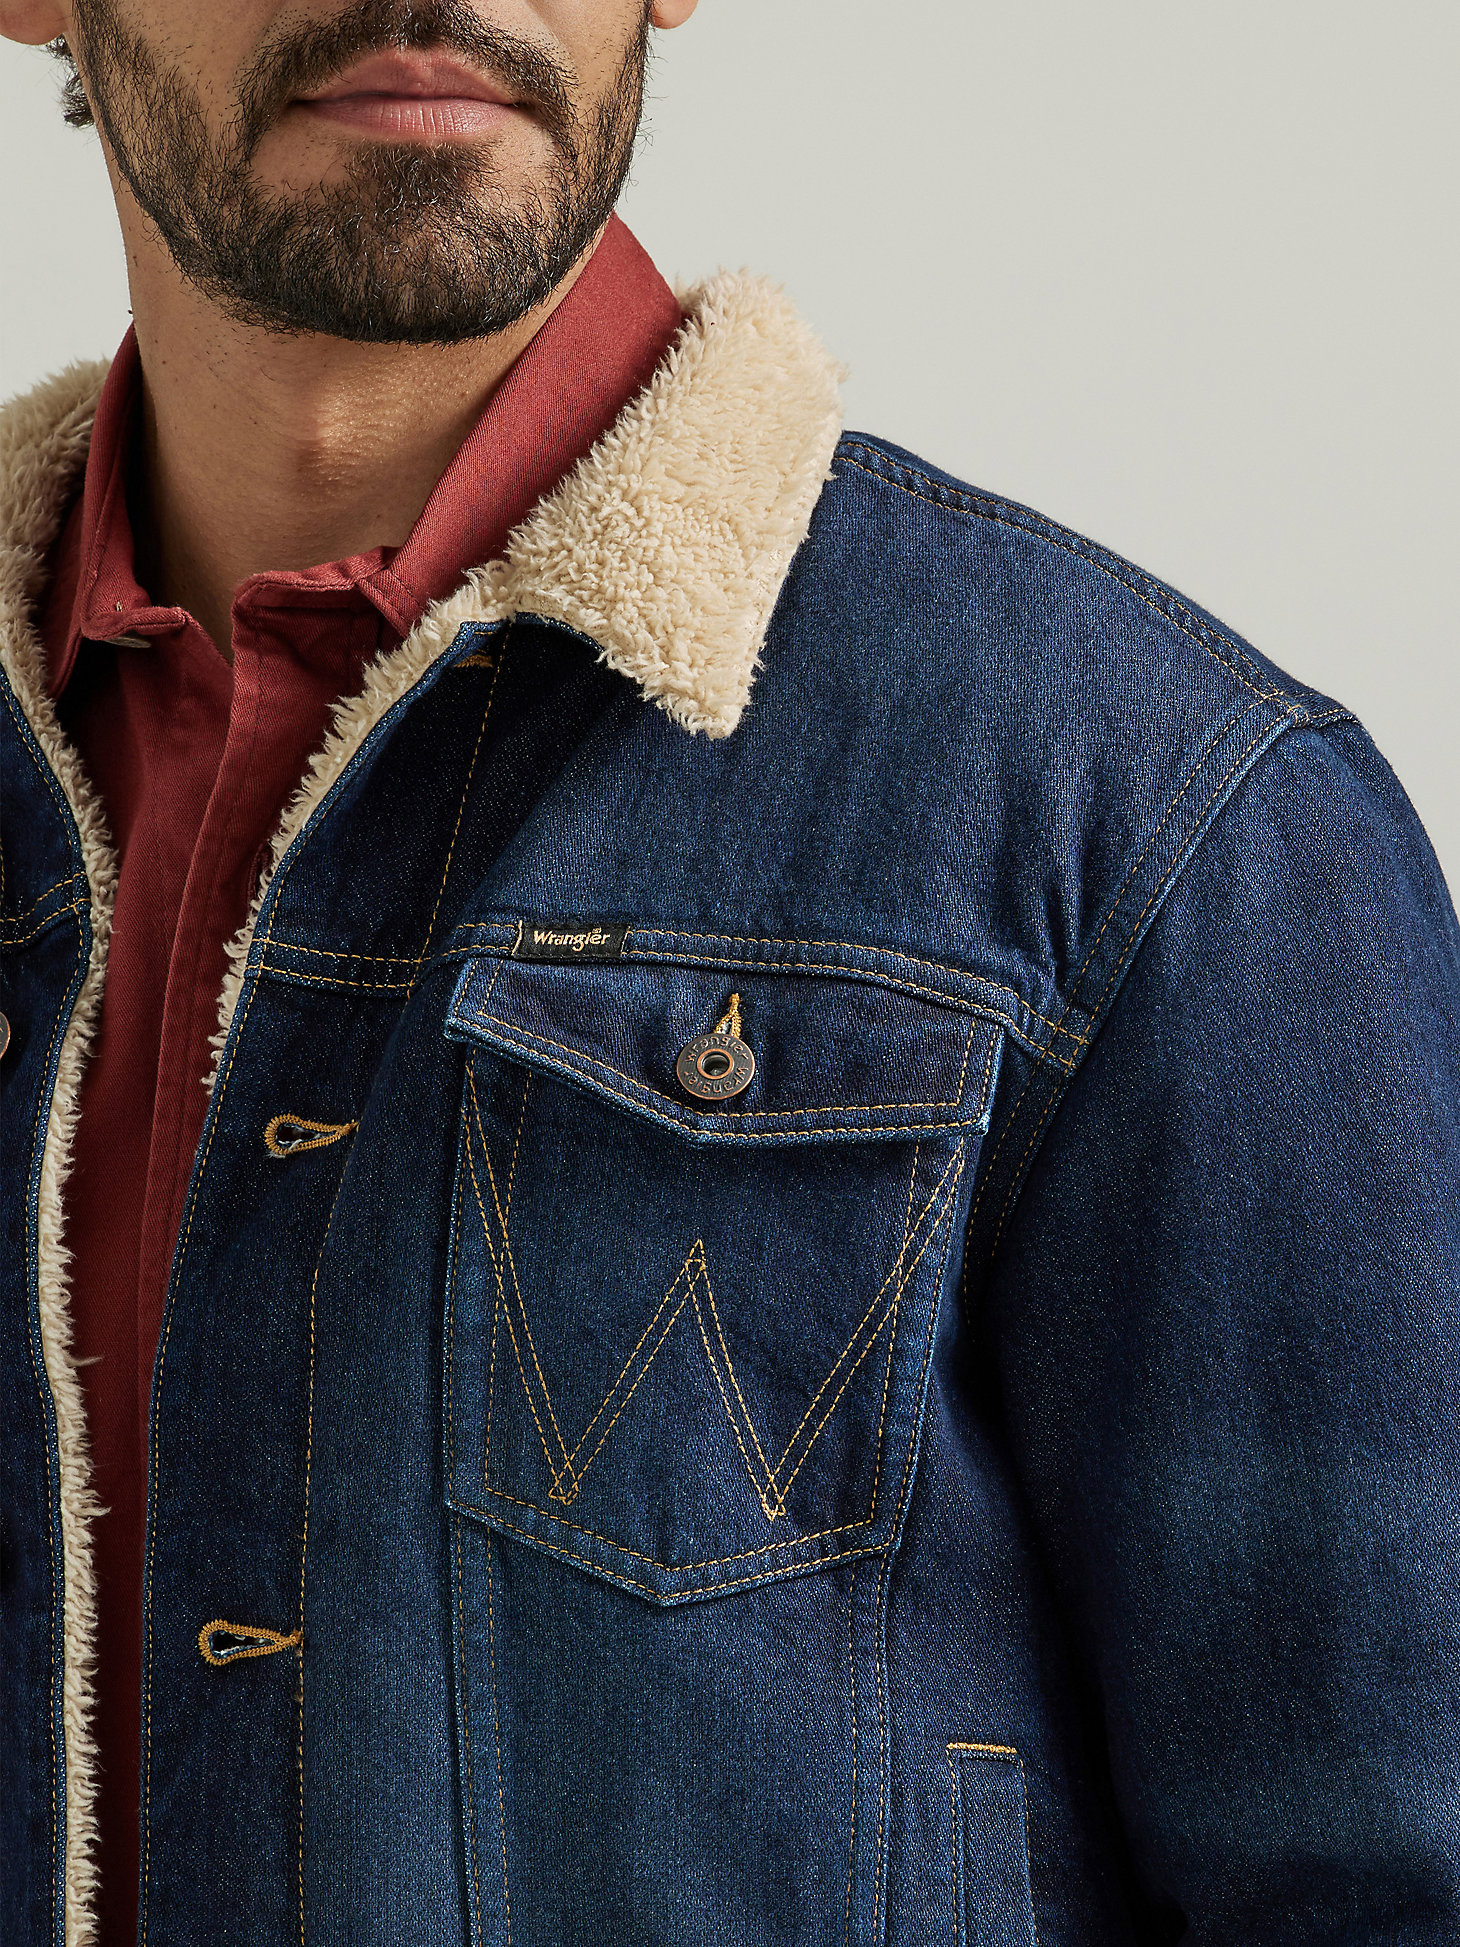 Men's Wrangler® Sherpa Lined Denim Jacket in Dark Wash alternative view 4